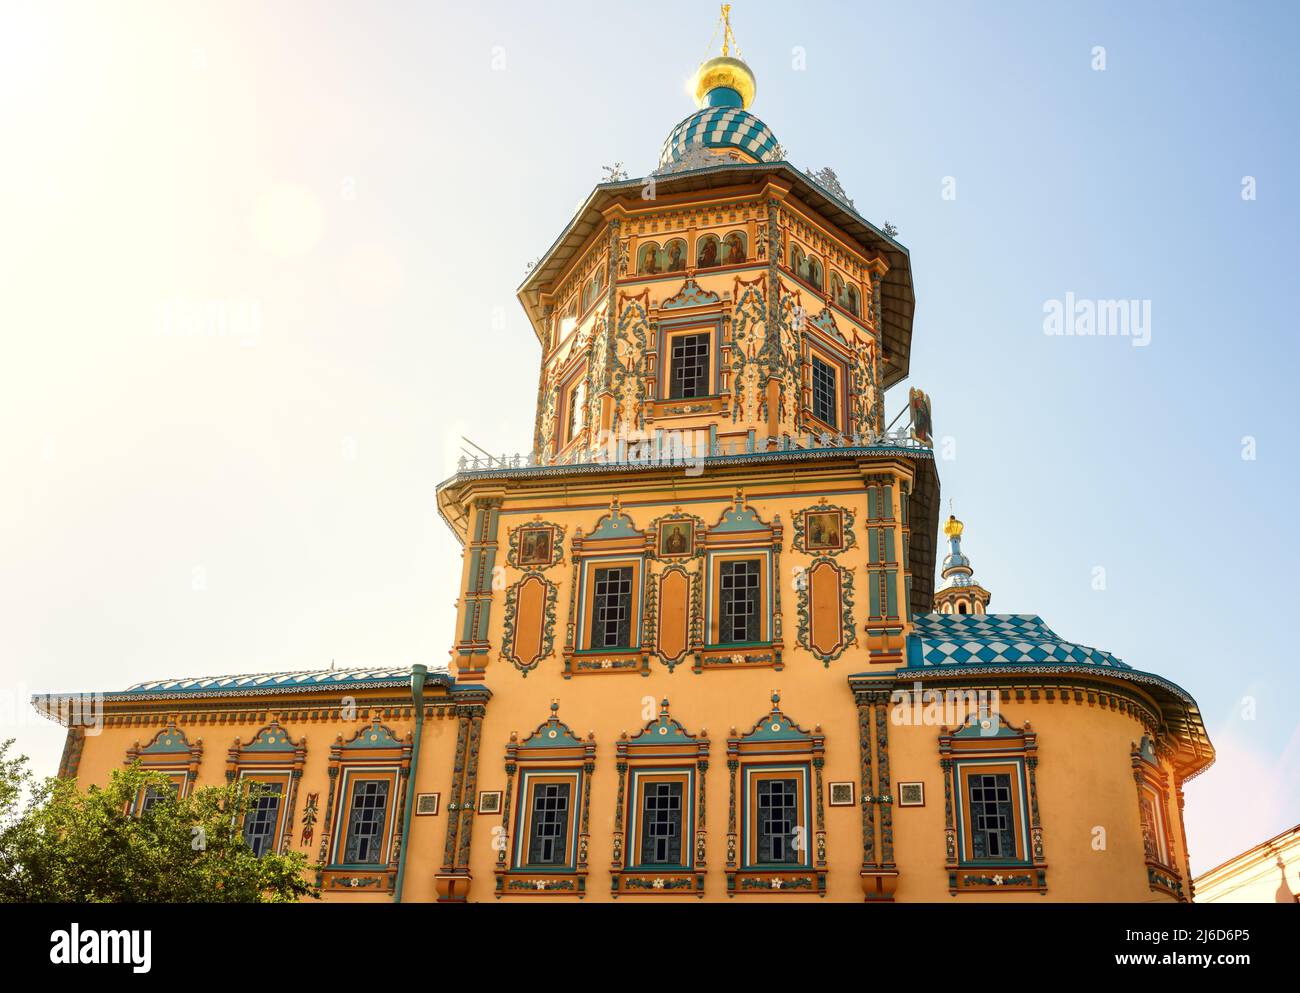 Cathédrale Saint-Pierre-et-Paul, Kazan, Tatarstan, Russie. C'est l'attraction touristique de Kazan. Église orthodoxe russe peinte ornée en été, soleil Banque D'Images